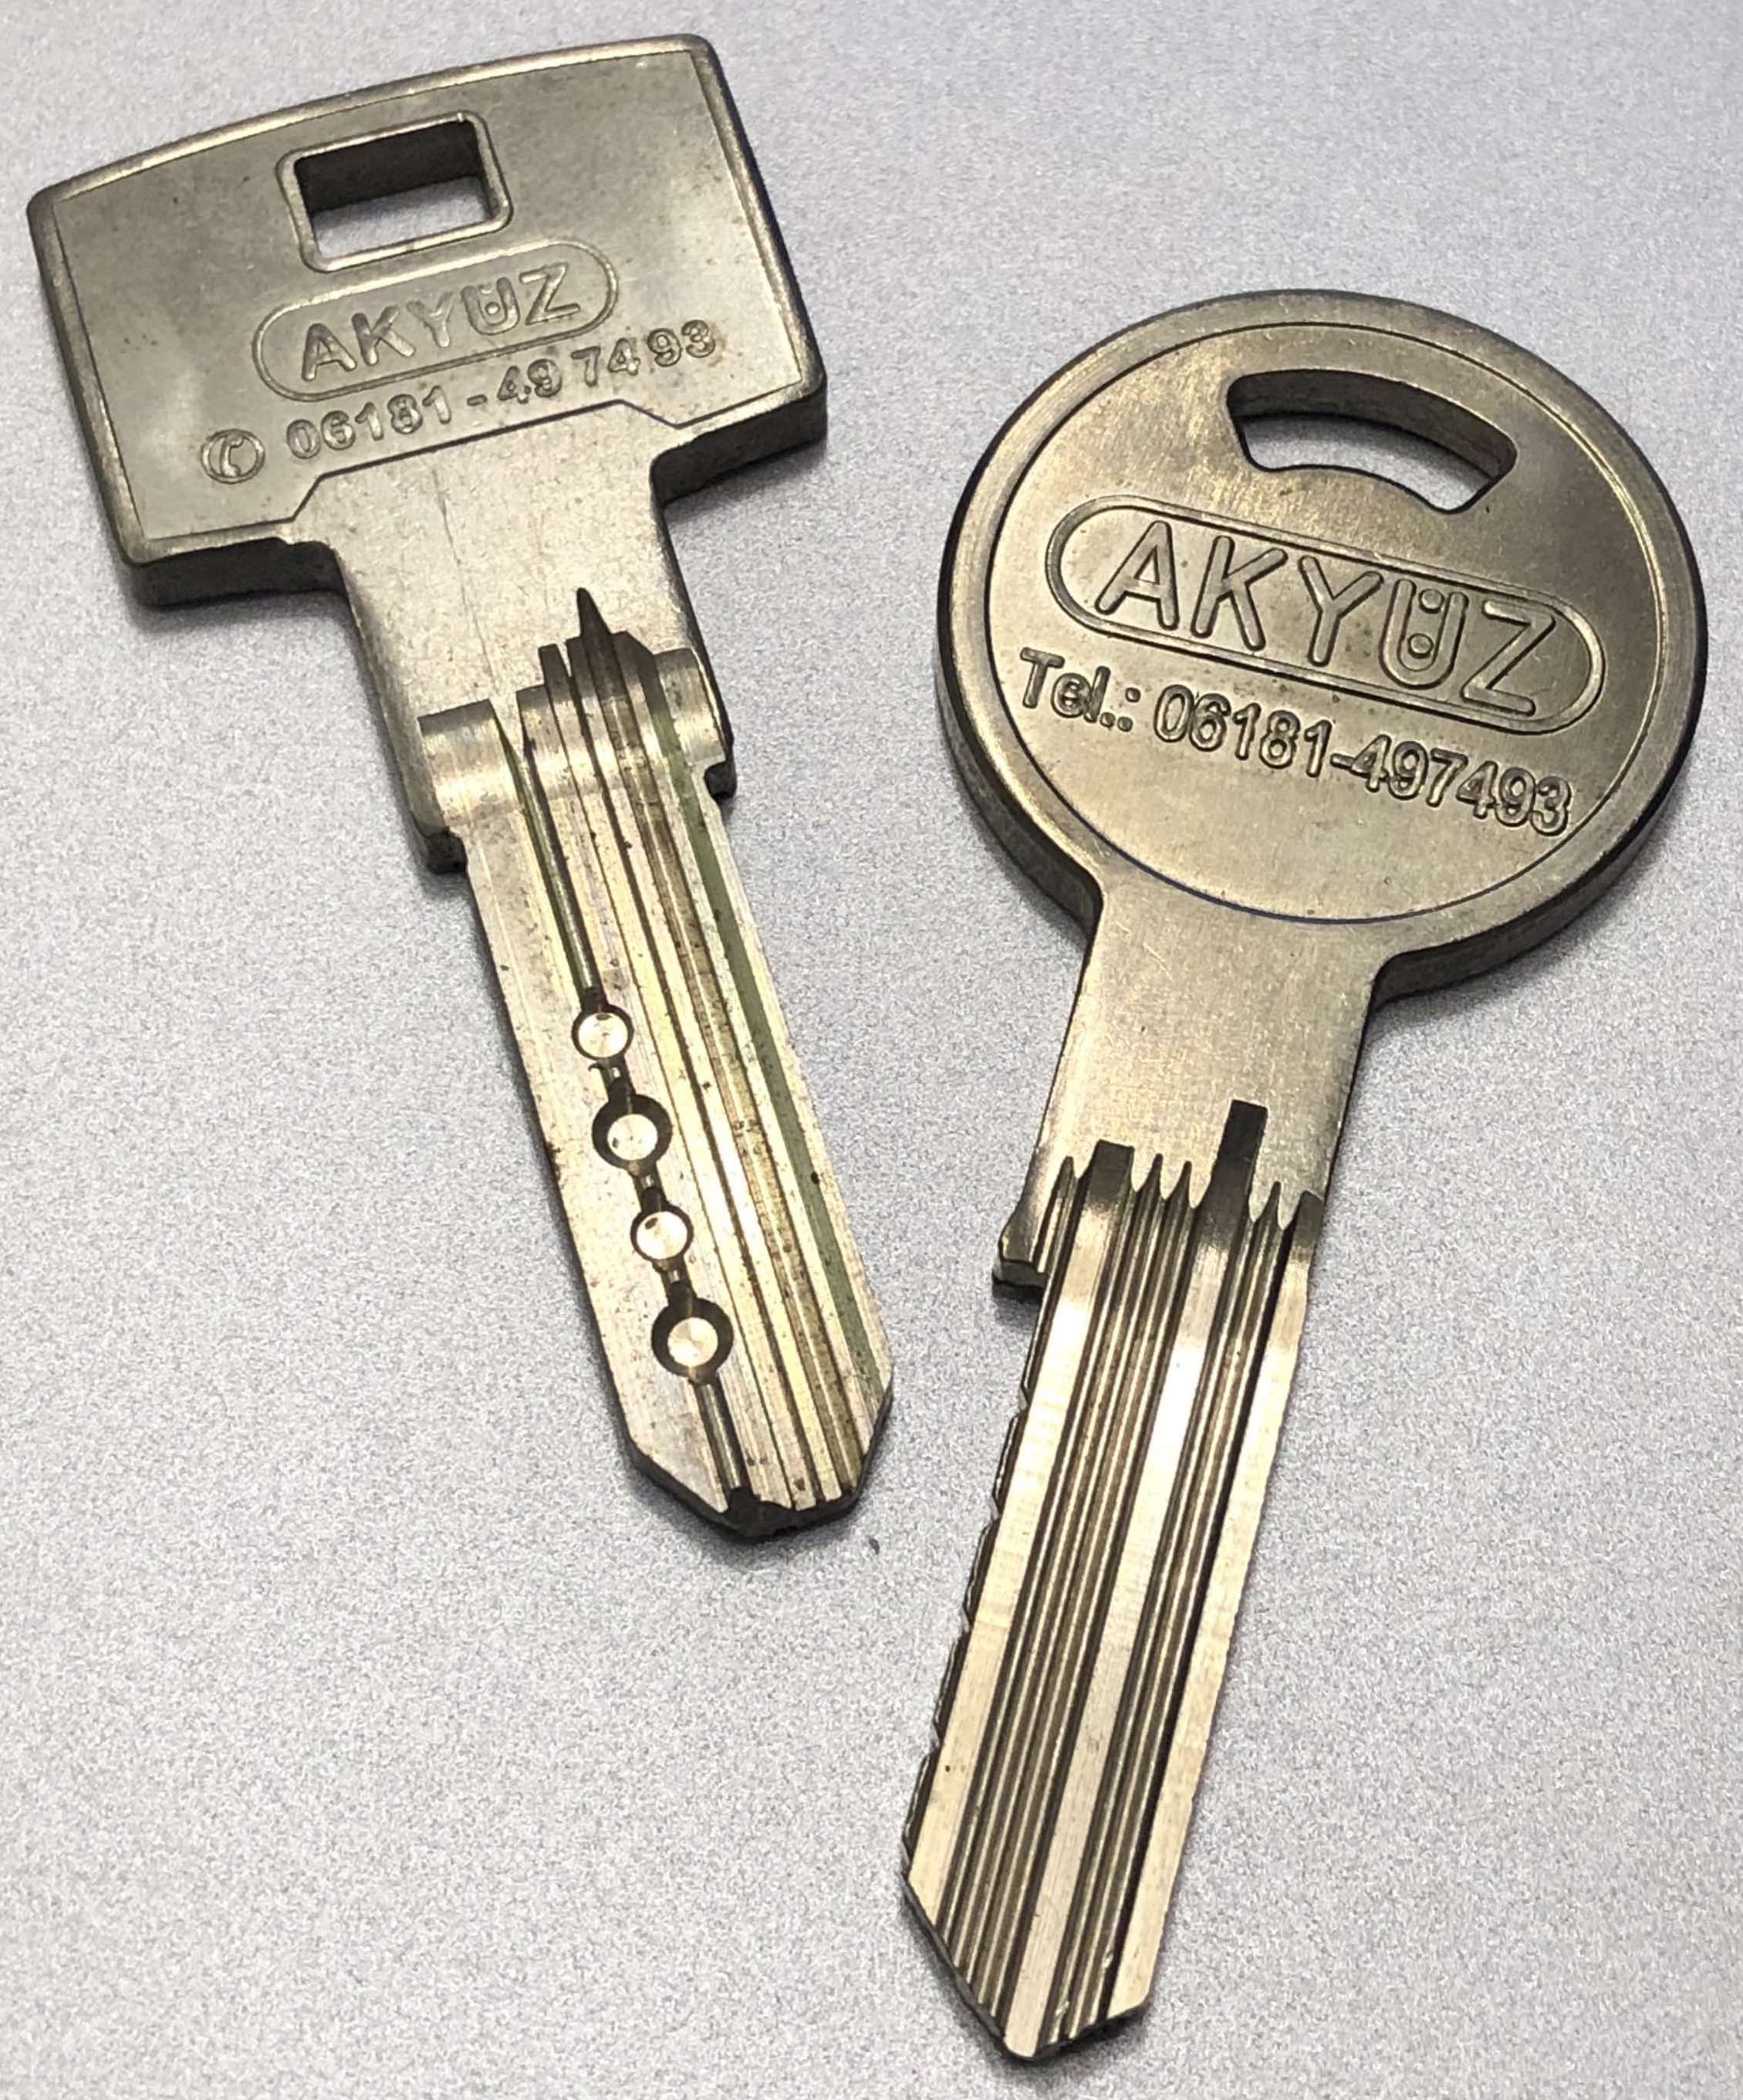 Kfz Opel Schlüssel nach Code fräsen - Schlüsseldienst Frankfurt am